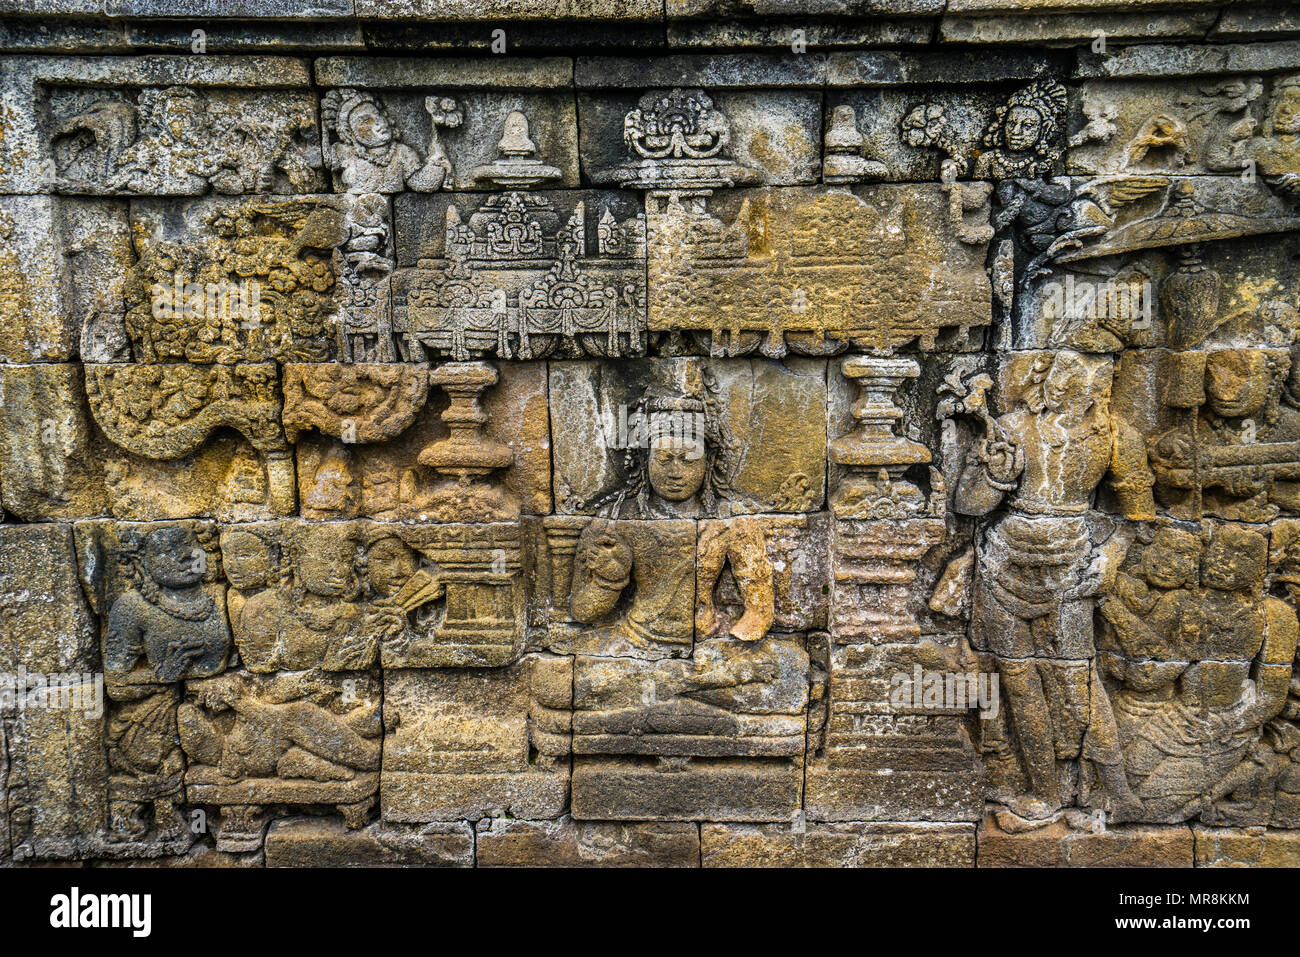 Panneaux en relief sur la balustrade de 4ème 9ème siècle Borobudur temple bouddhiste, les quelque 2672 panneaux forment l'un des plus complets Buddhis Banque D'Images